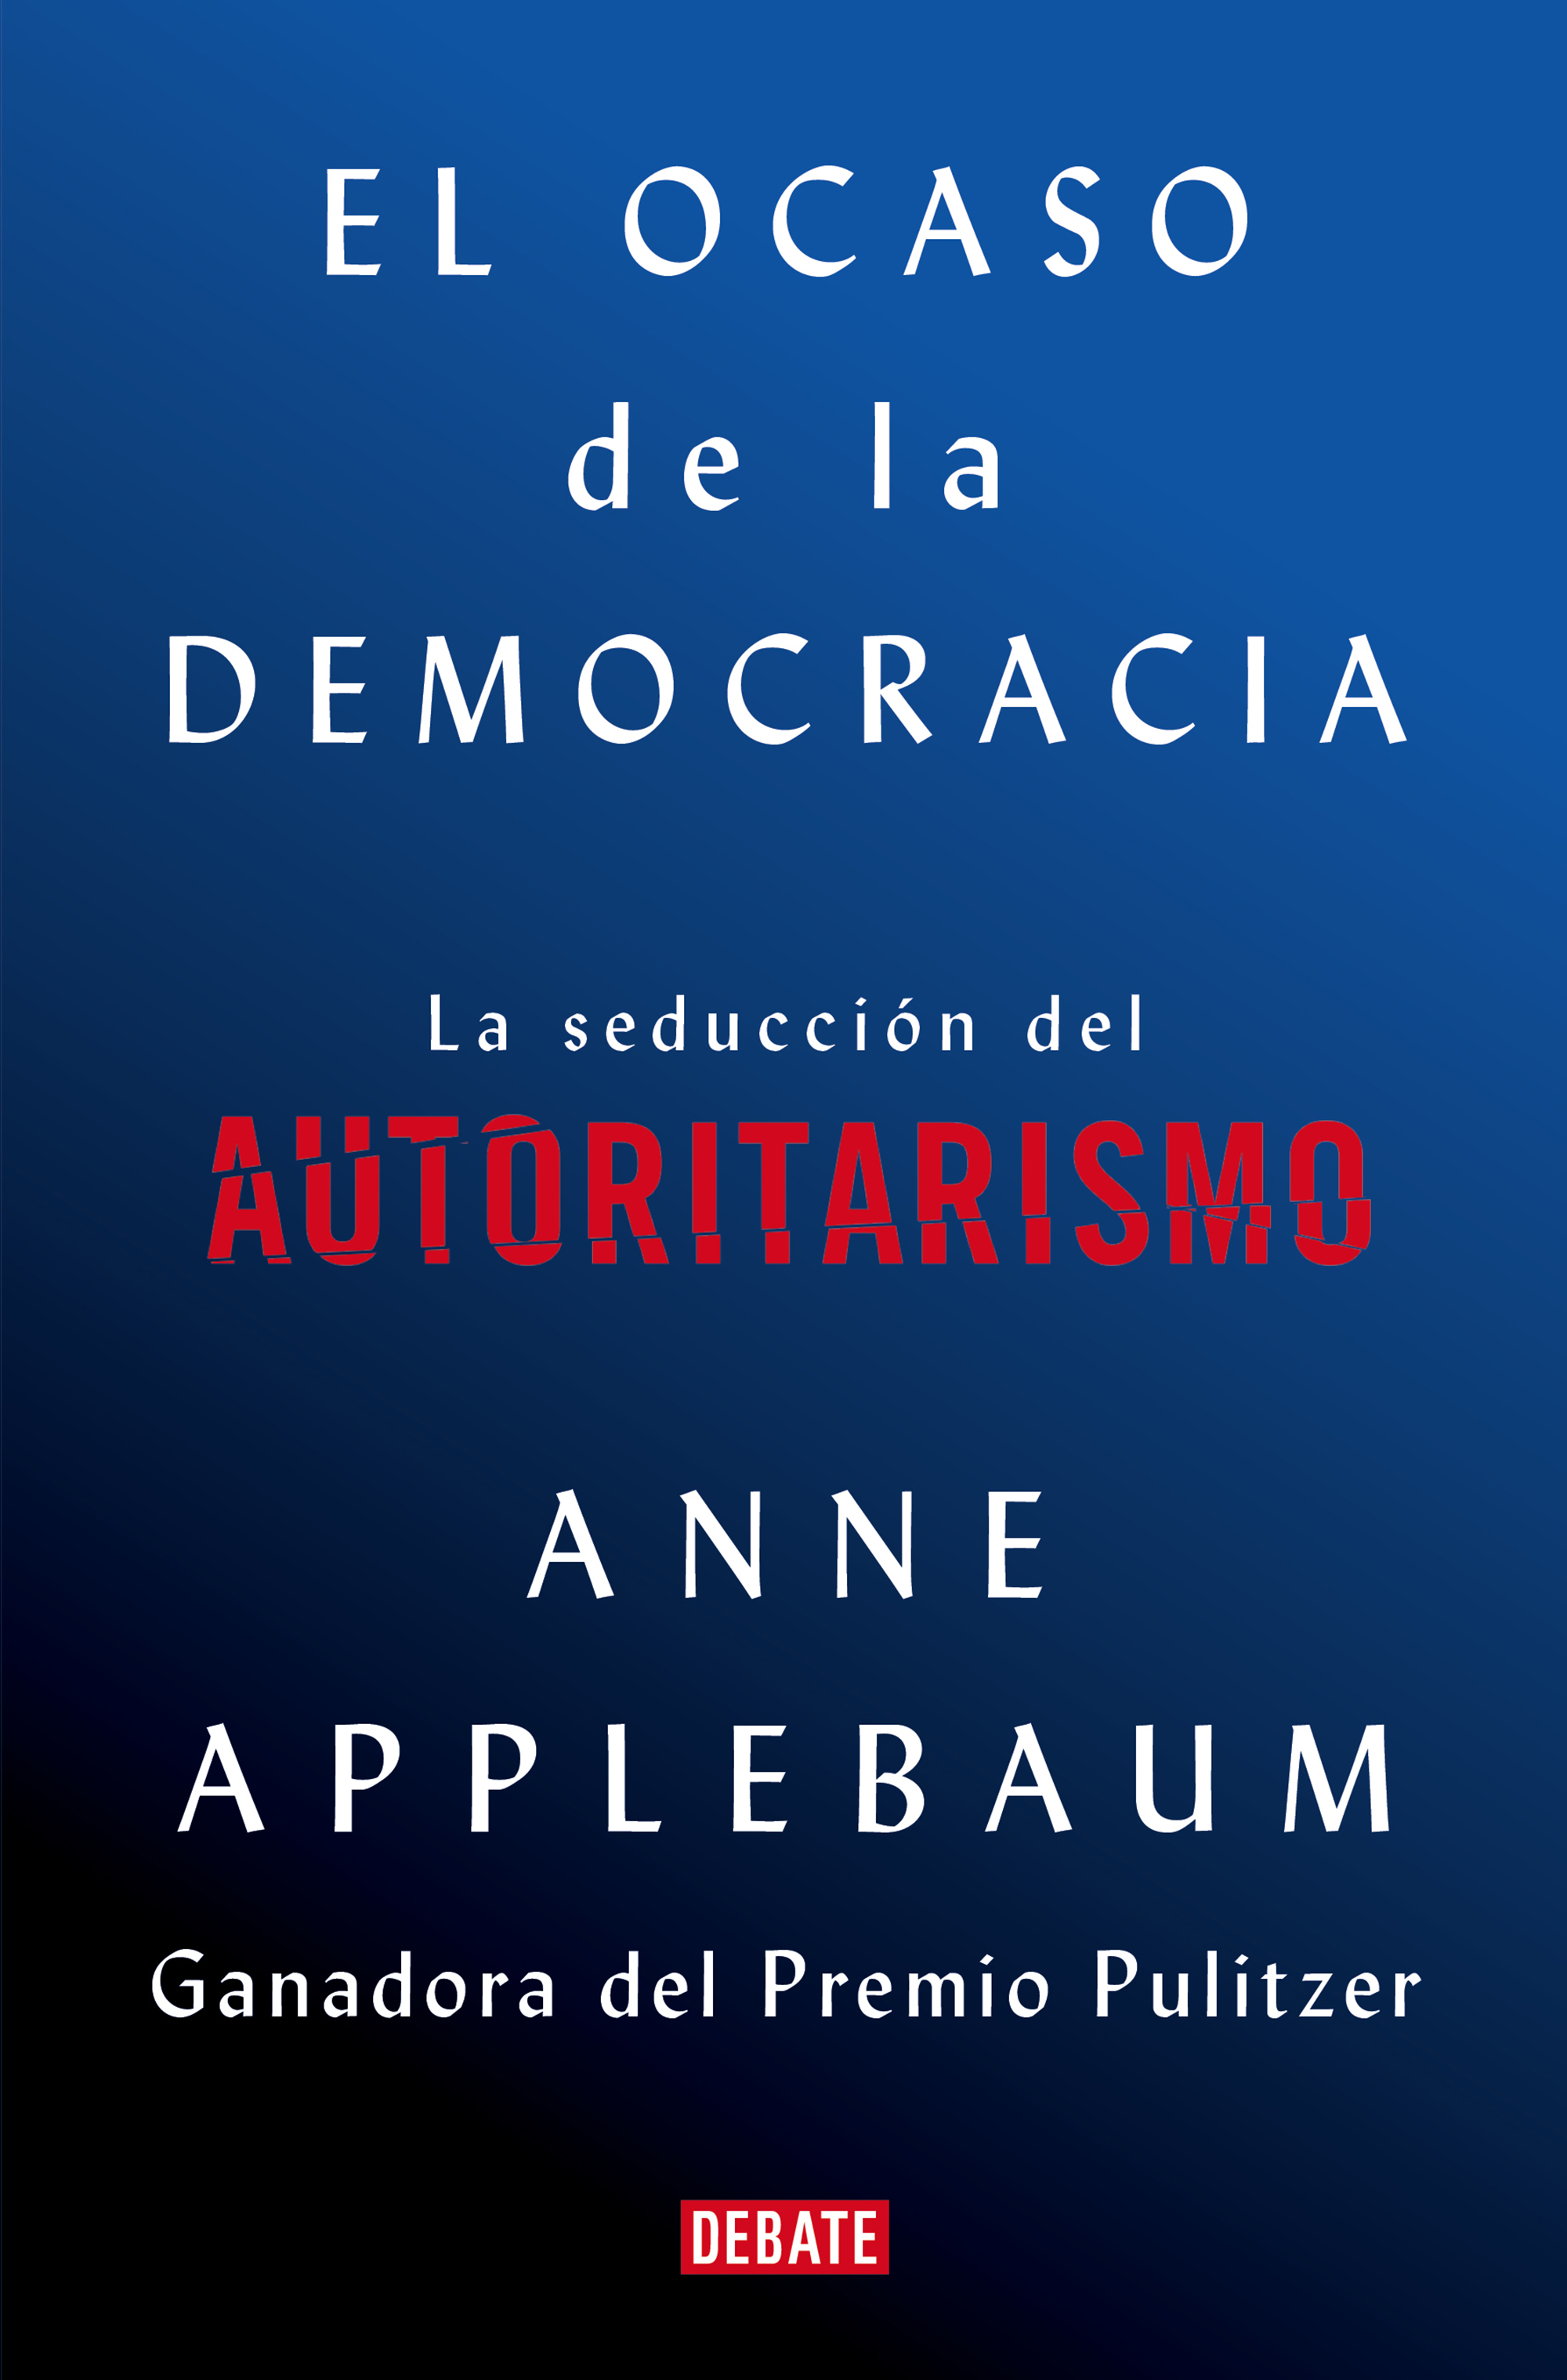 Ocaso de la democracia, El "La seducción del autoritarismo"